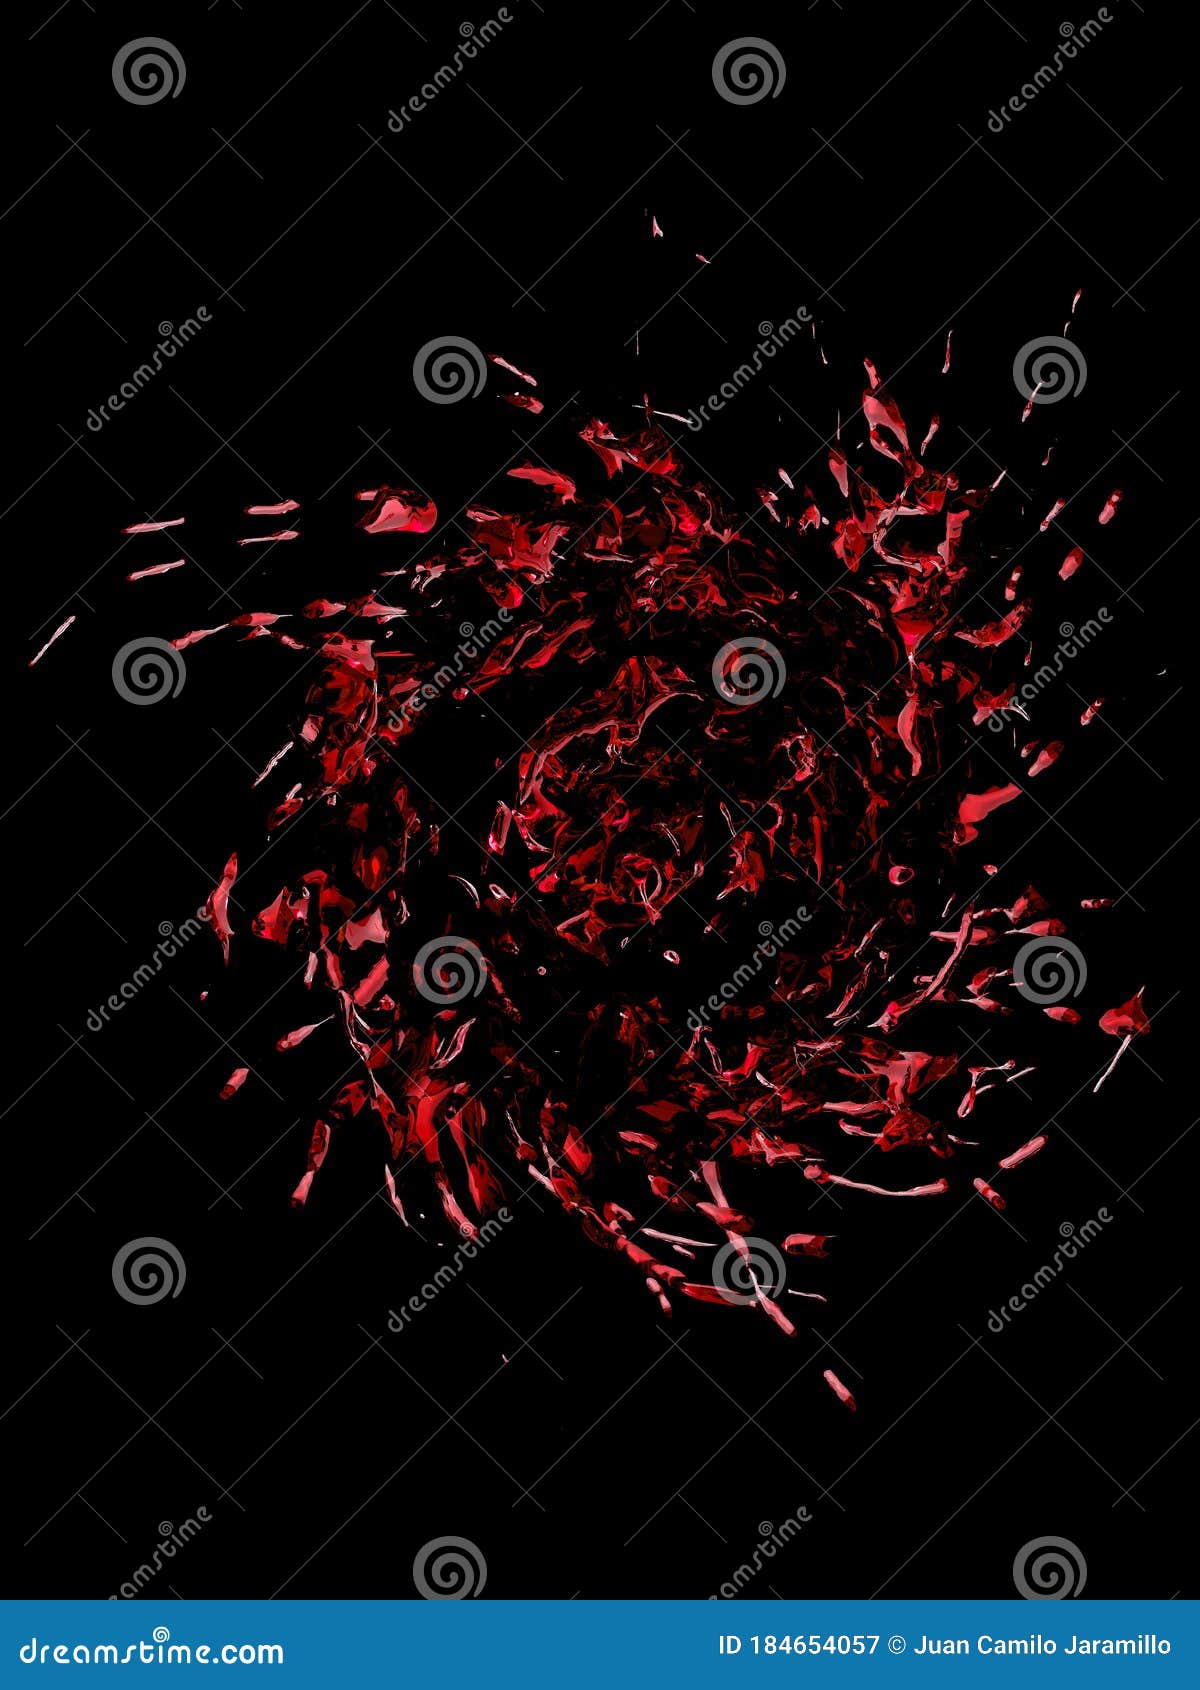 spiral red water splash  on a black background